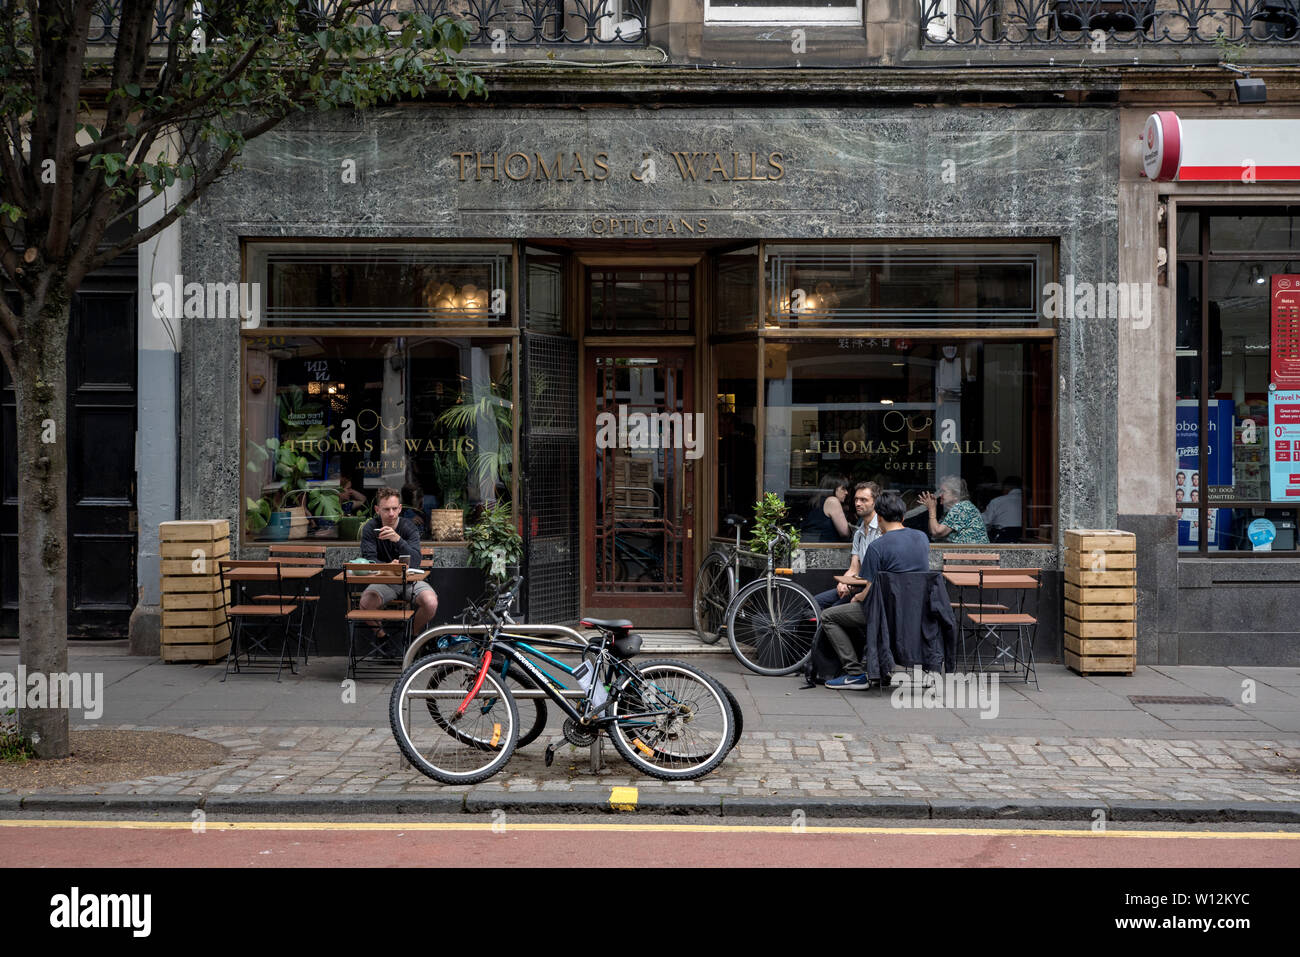 Il digital signage di Thomas J pareti ottici è stato trattenuto quando i locali sono stati convertiti in un cafe'. Forrest Road, Edimburgo, Scozia, Regno Unito. Foto Stock